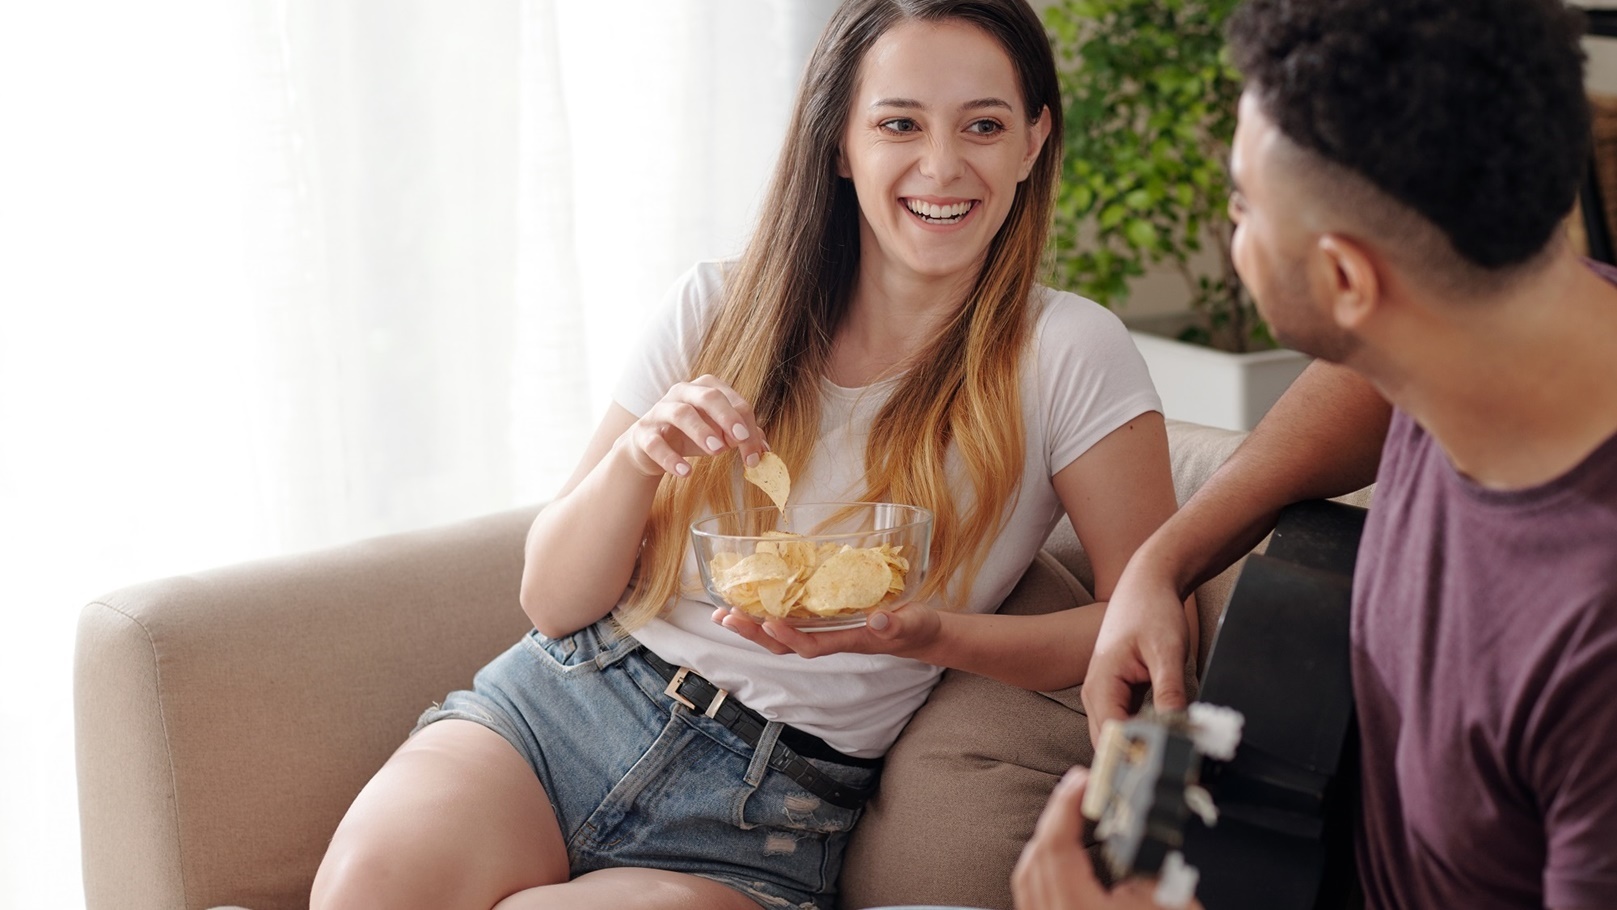 laughing-woman-eating-potato-chips-2021-12-09-05-02-32-utc